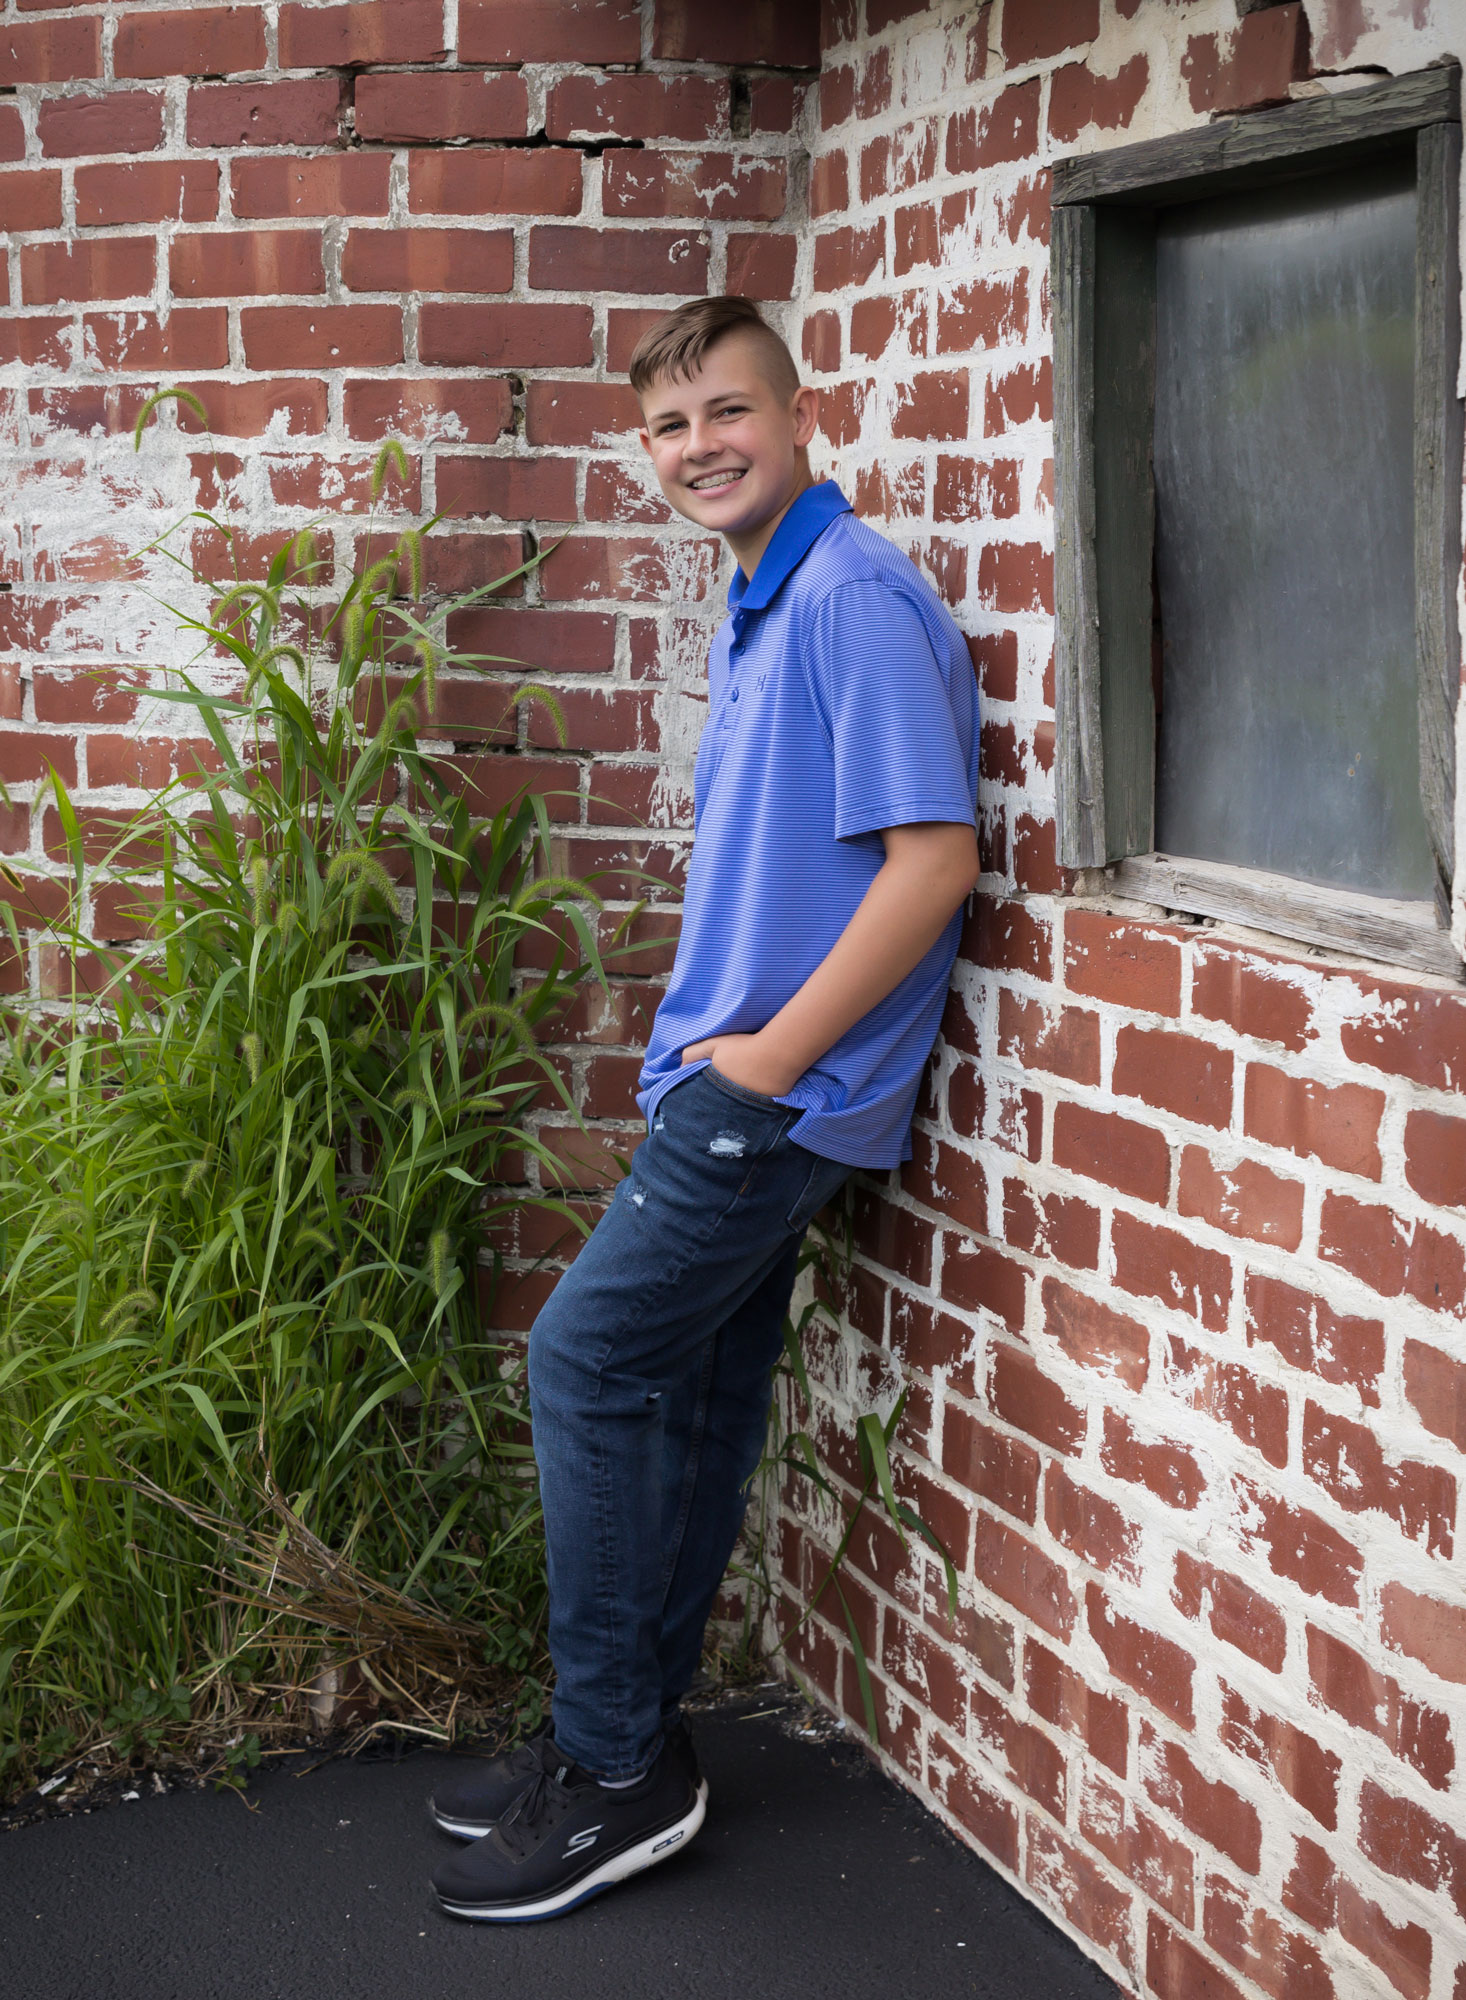 high school boy leaning against brick barn